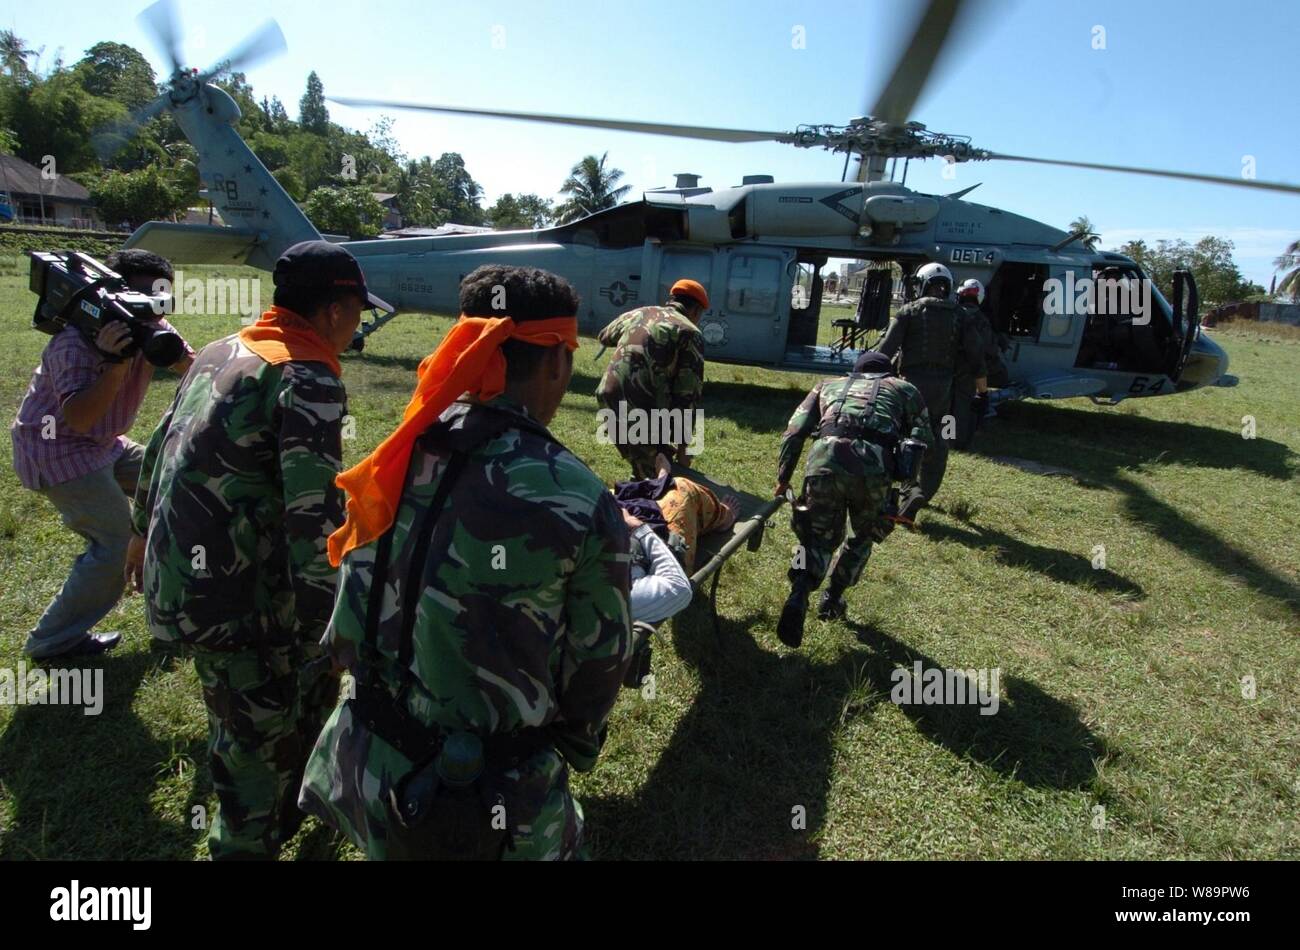 Los soldados indonesios llevan una mujer indonesia espera la Marina estadounidense MH-60 Knighthawk helicóptero para transporte aéreo de Nias, en Indonesia, para el buque hospital USNS Mercy (T-AH 19) el 6 de abril de 2005. La misericordia y el combate buque USNS Niagara Falls (T-AFS 3) están actualmente en funcionamiento en la costa de la isla de Nias, proporcionando asistencia médica y humanitaria a las víctimas del 28 de marzo de 2005, un sismo de magnitud 8,7. El helicóptero y su tripulación son asignados al escuadrón de apoyo de helicópteros de combate 5 a bordo de las Cataratas del Niágara. Foto de stock